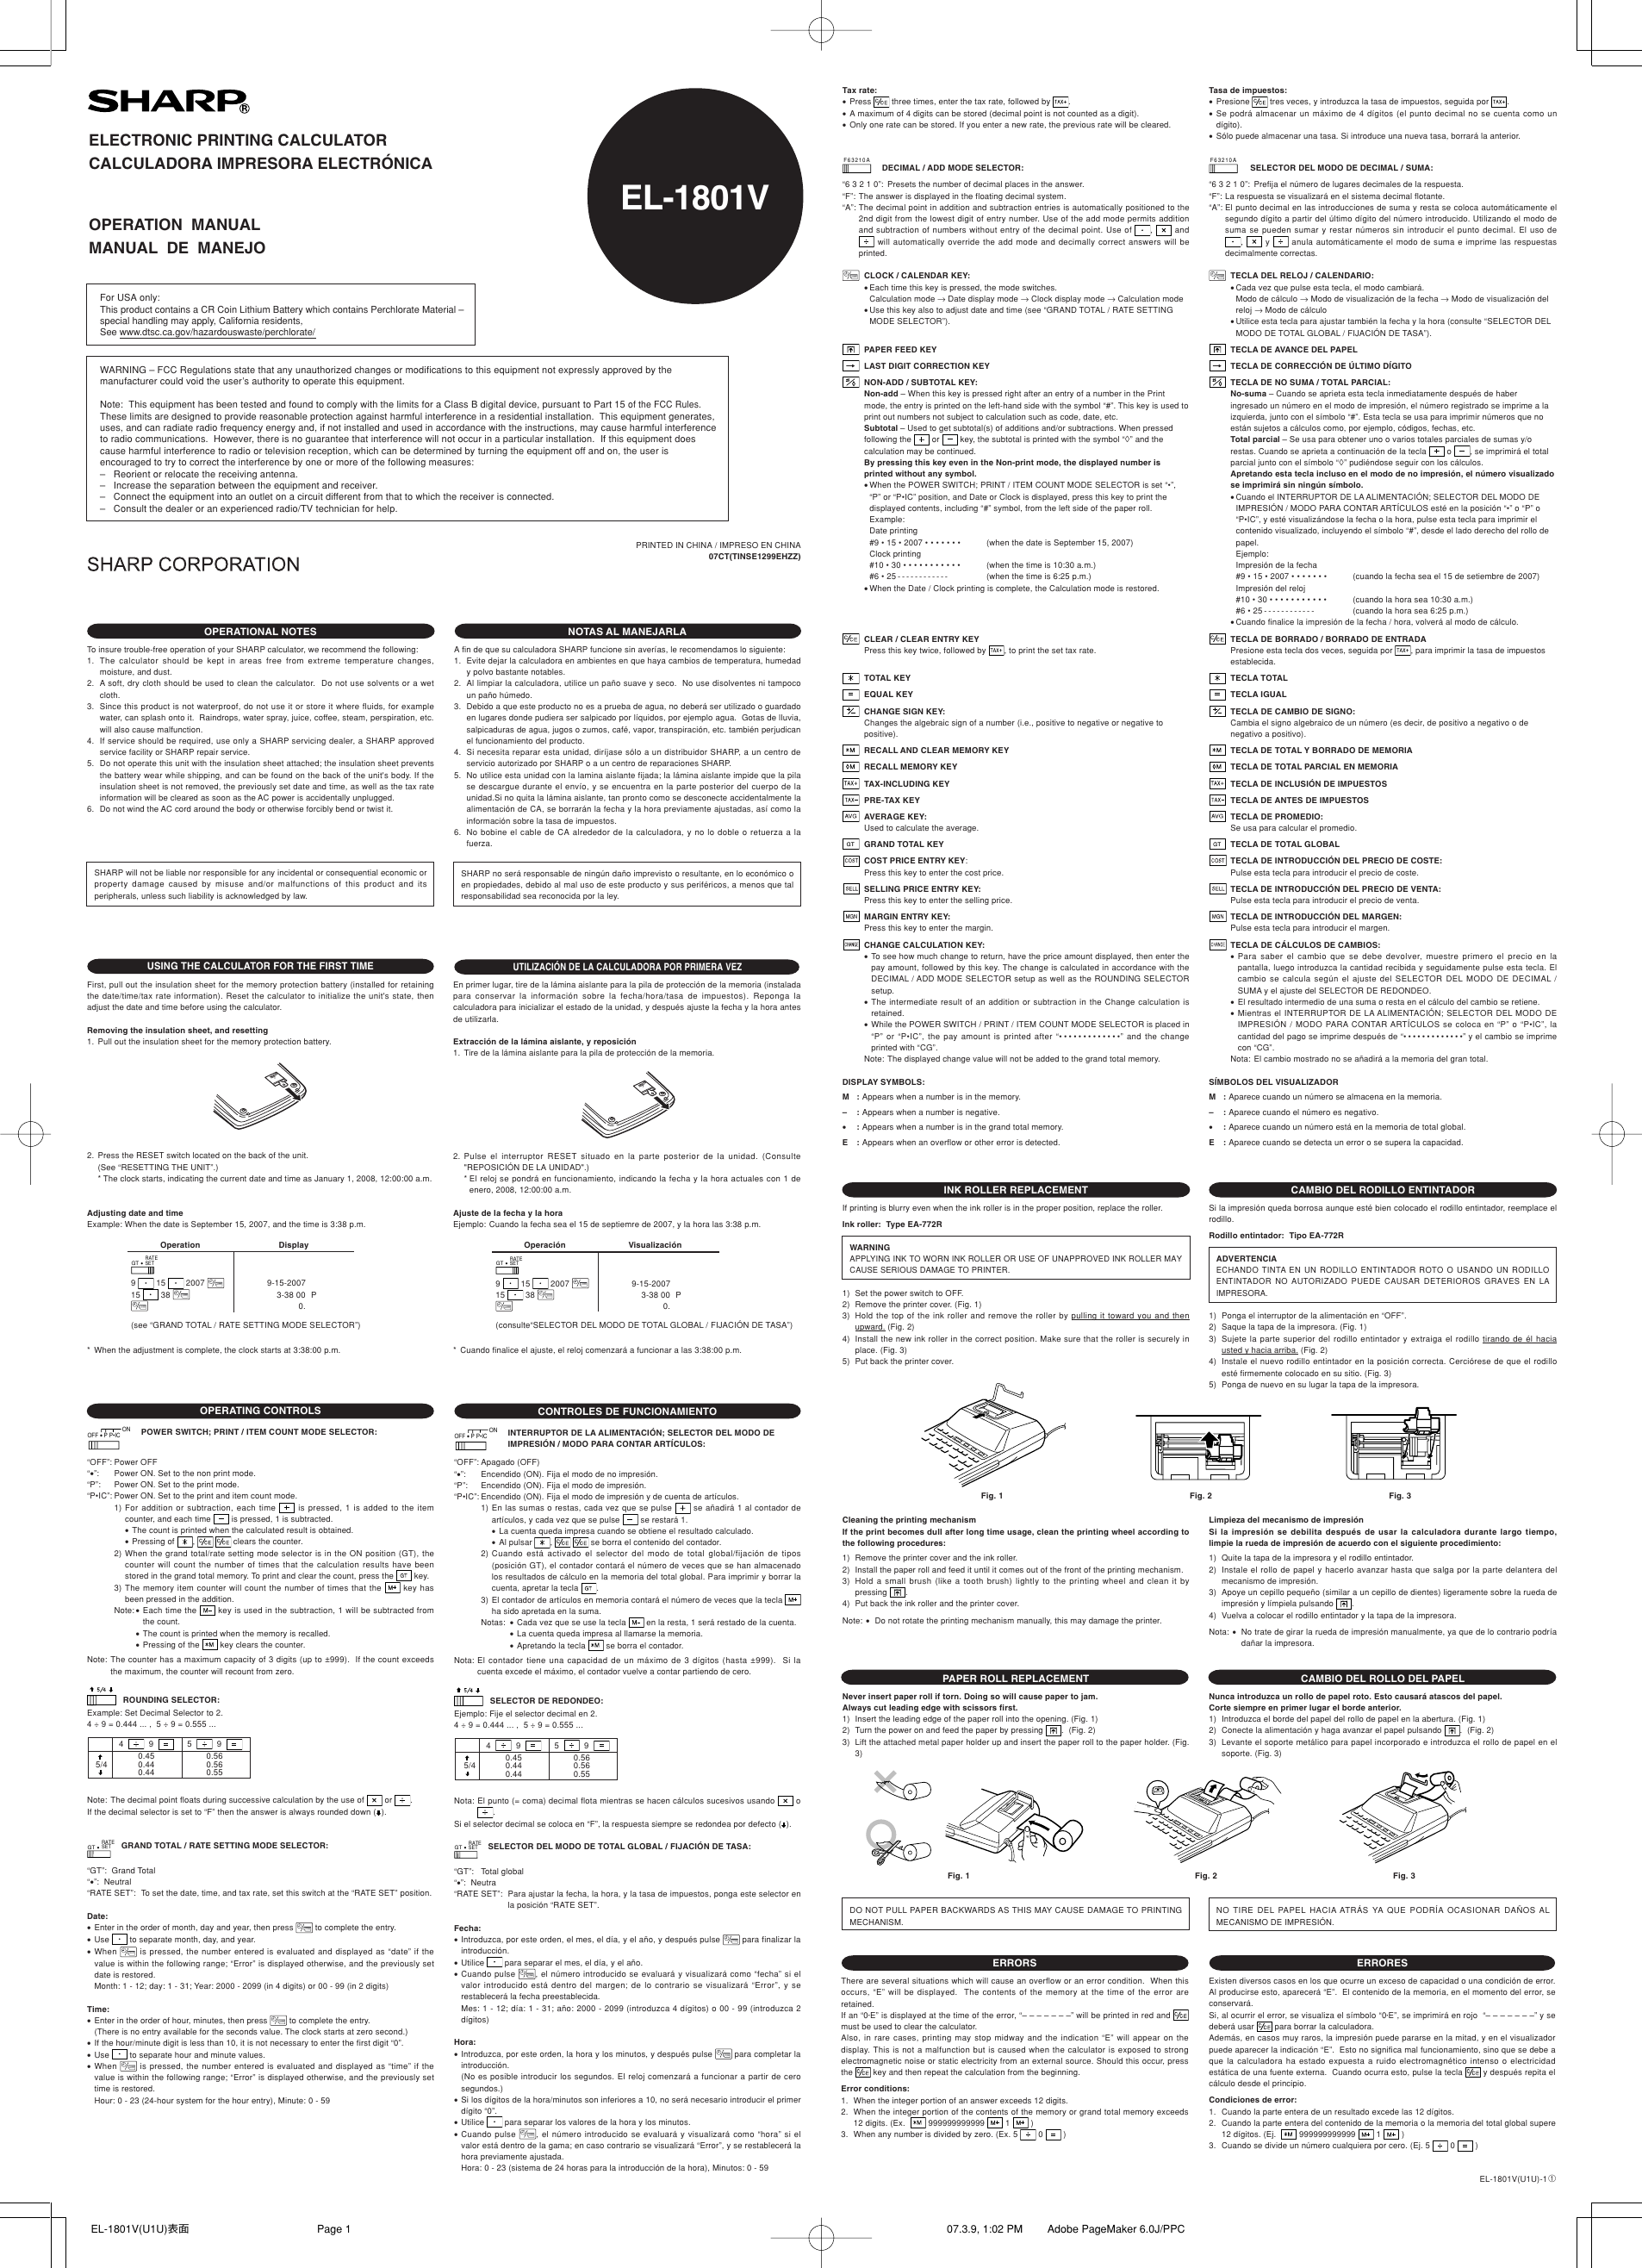 Page 1 of 2 - Sharp Sharp-El-1801V-Owners-Manual- EL-1801V Operation Manual  Sharp-el-1801v-owners-manual